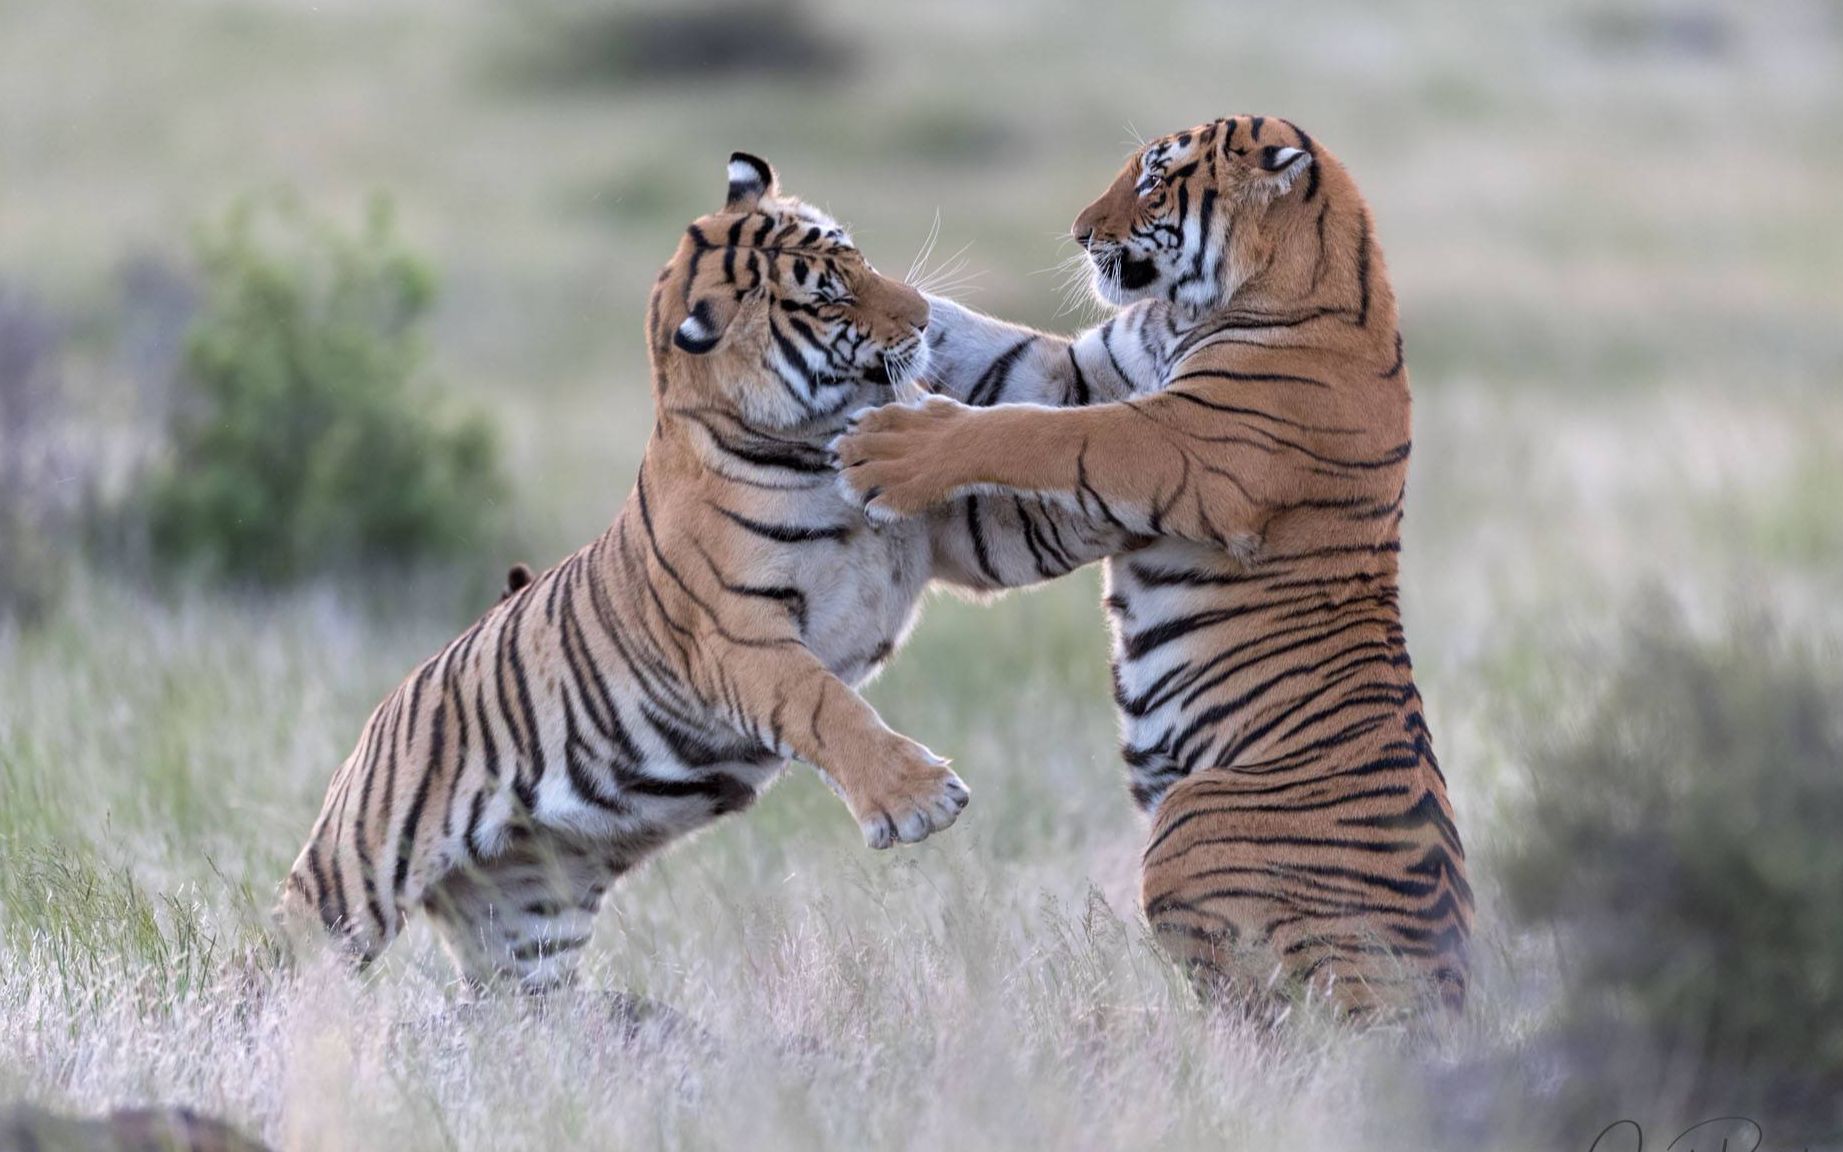 动物园的两头老虎突然展开超级激烈的战斗,这出掌速度太吓人 !